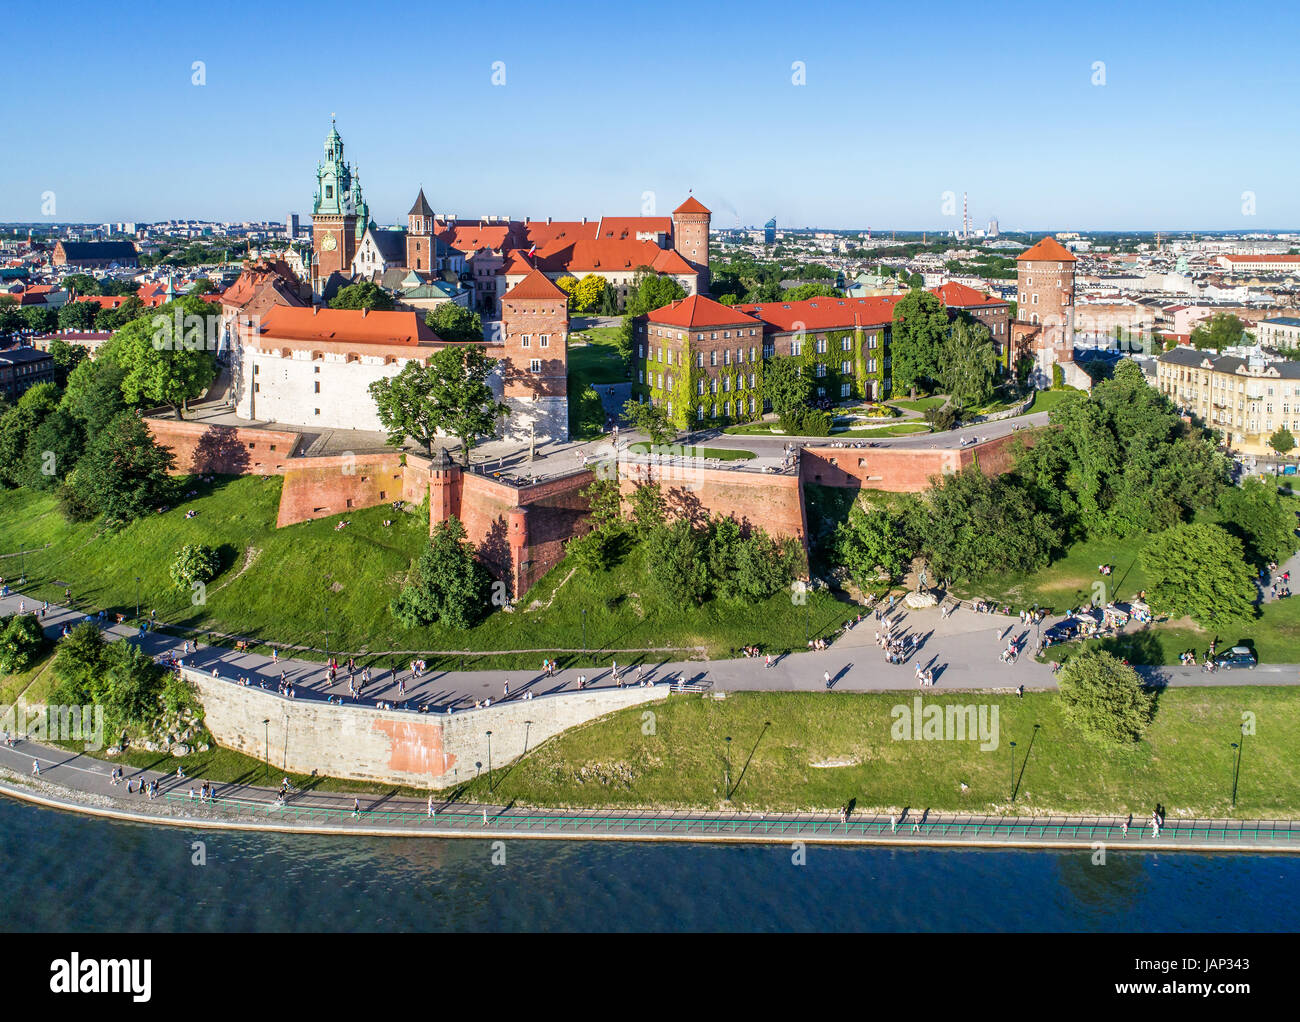 Krakau, Polen. Wawel-Hügel mit historischen königlichen Schloss und Kathedrale, Weichsel, Park und Wandern Menschen. Luftbild bei Sonnenuntergang. Stockfoto